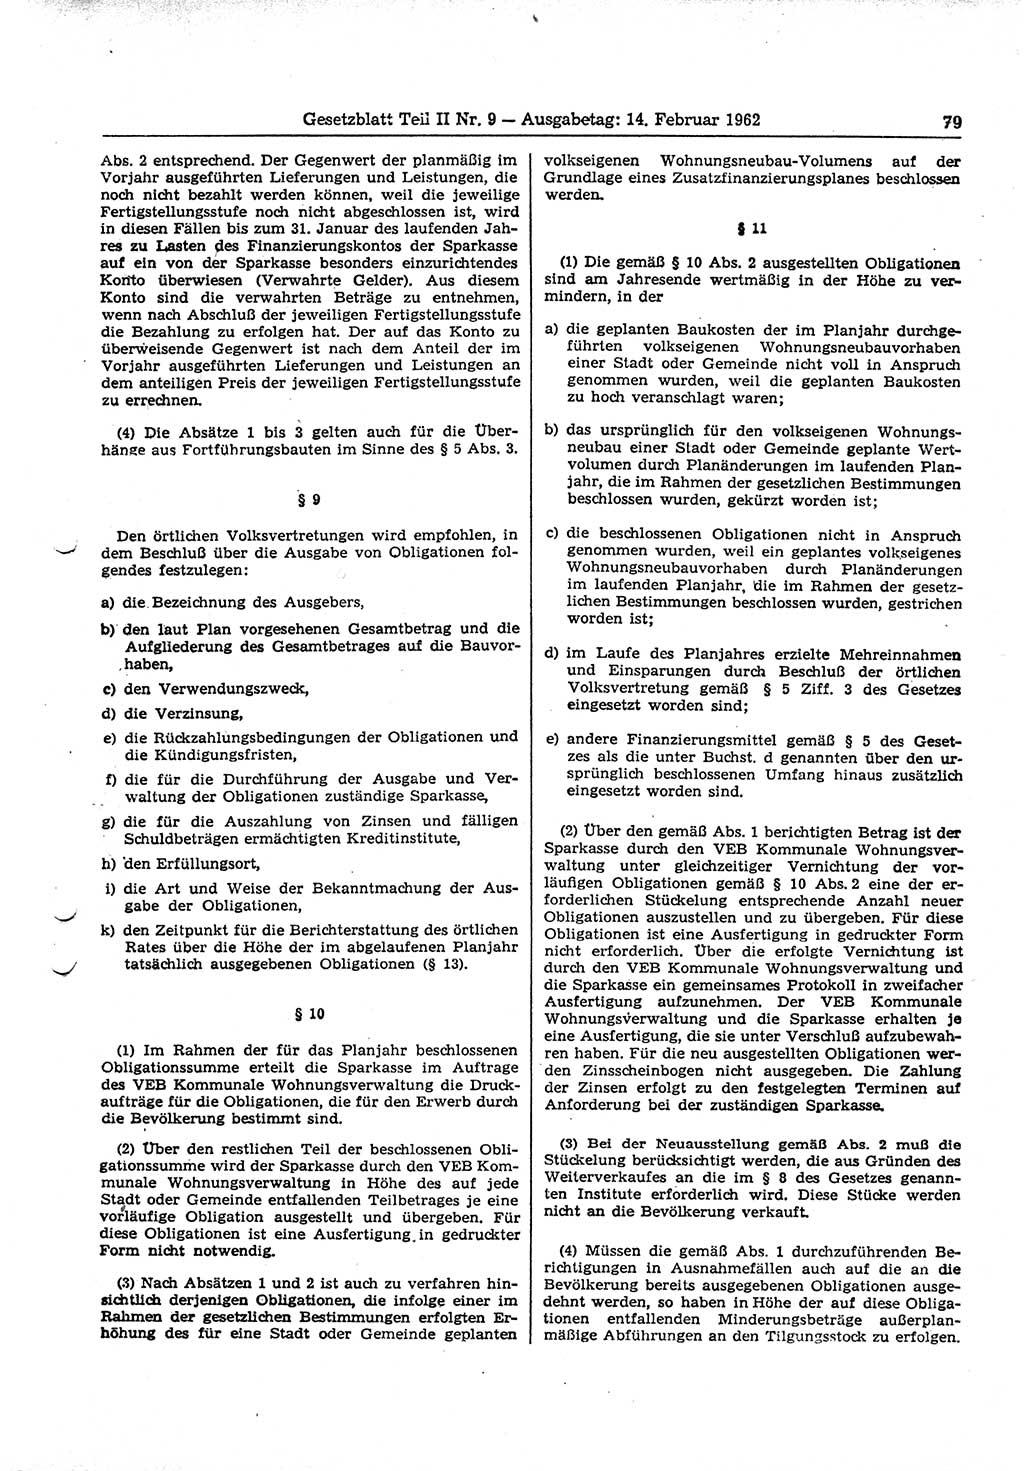 Gesetzblatt (GBl.) der Deutschen Demokratischen Republik (DDR) Teil ⅠⅠ 1962, Seite 79 (GBl. DDR ⅠⅠ 1962, S. 79)